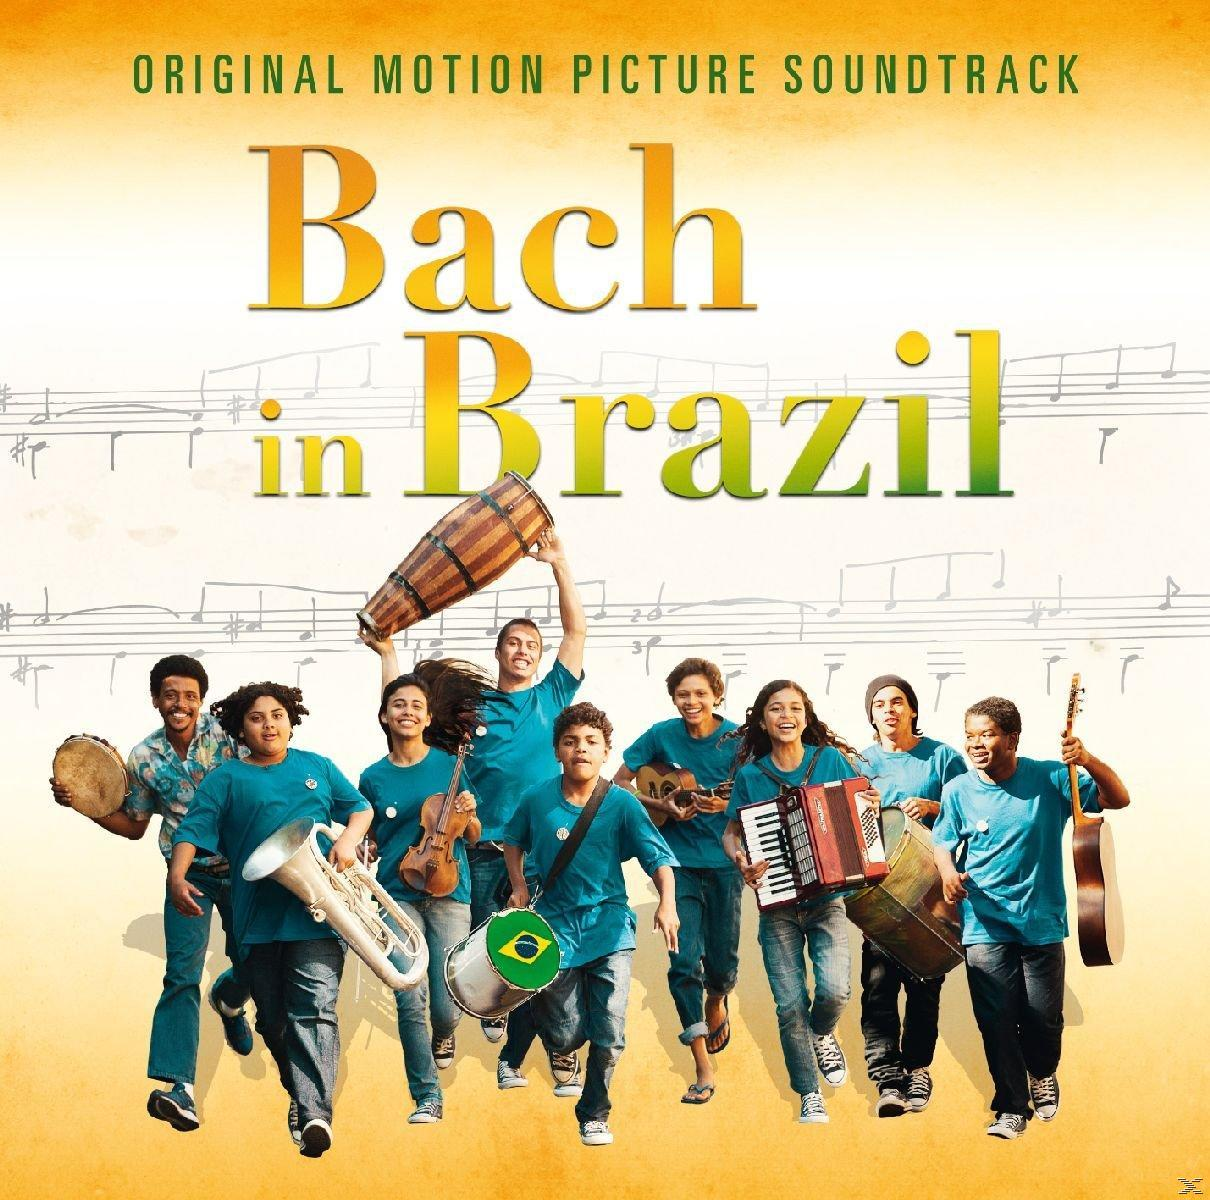 VARIOUS - In Bach (CD) Brazil 